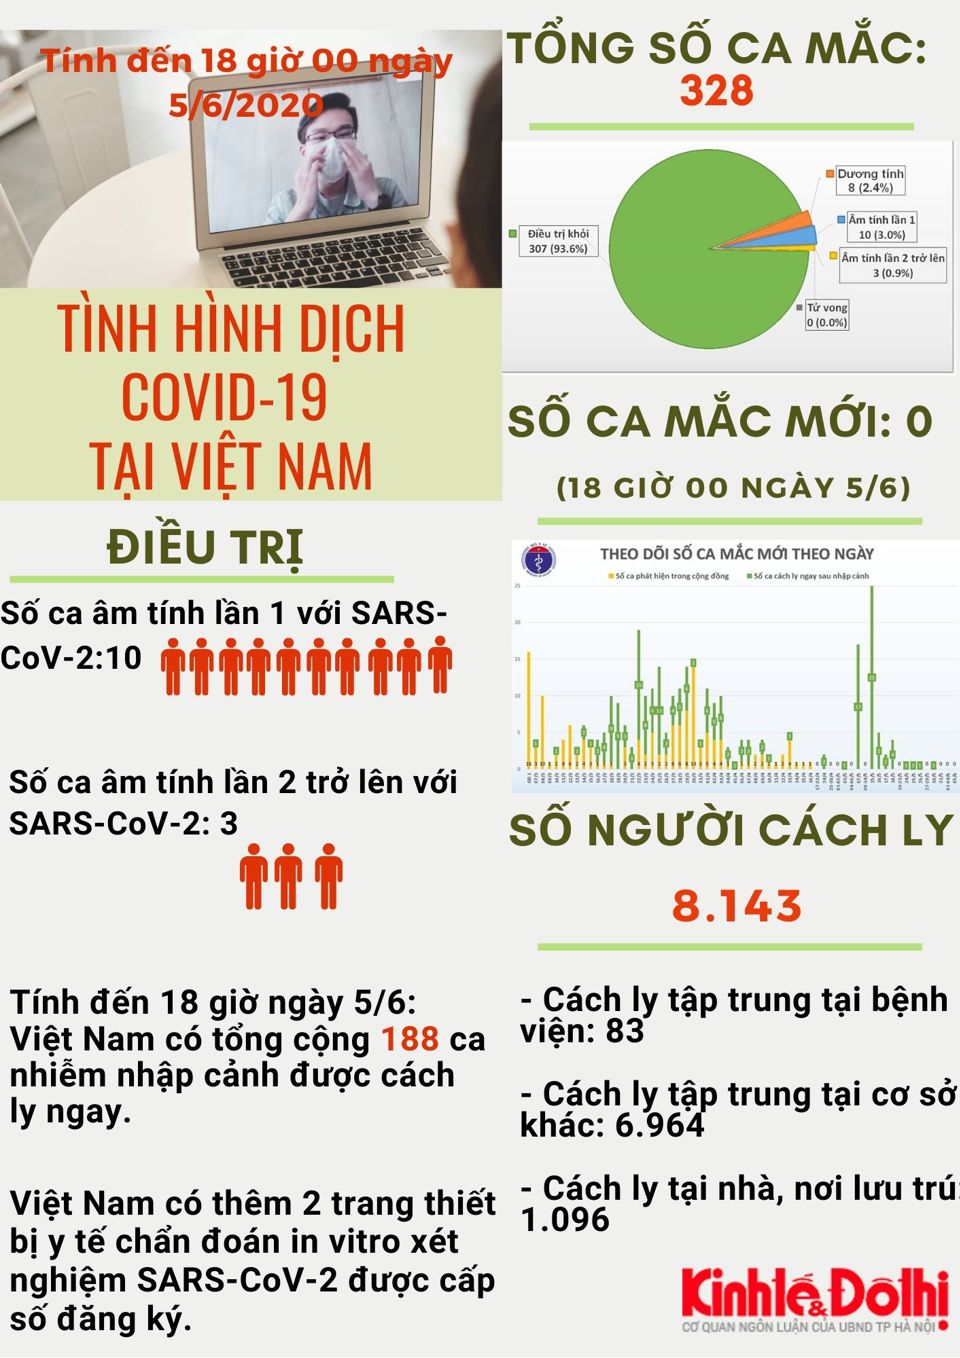 [Infographic] Tròn 50 ngày Việt Nam không có ca lây nhiễm Covid-19 trong cộng đồng - Ảnh 1